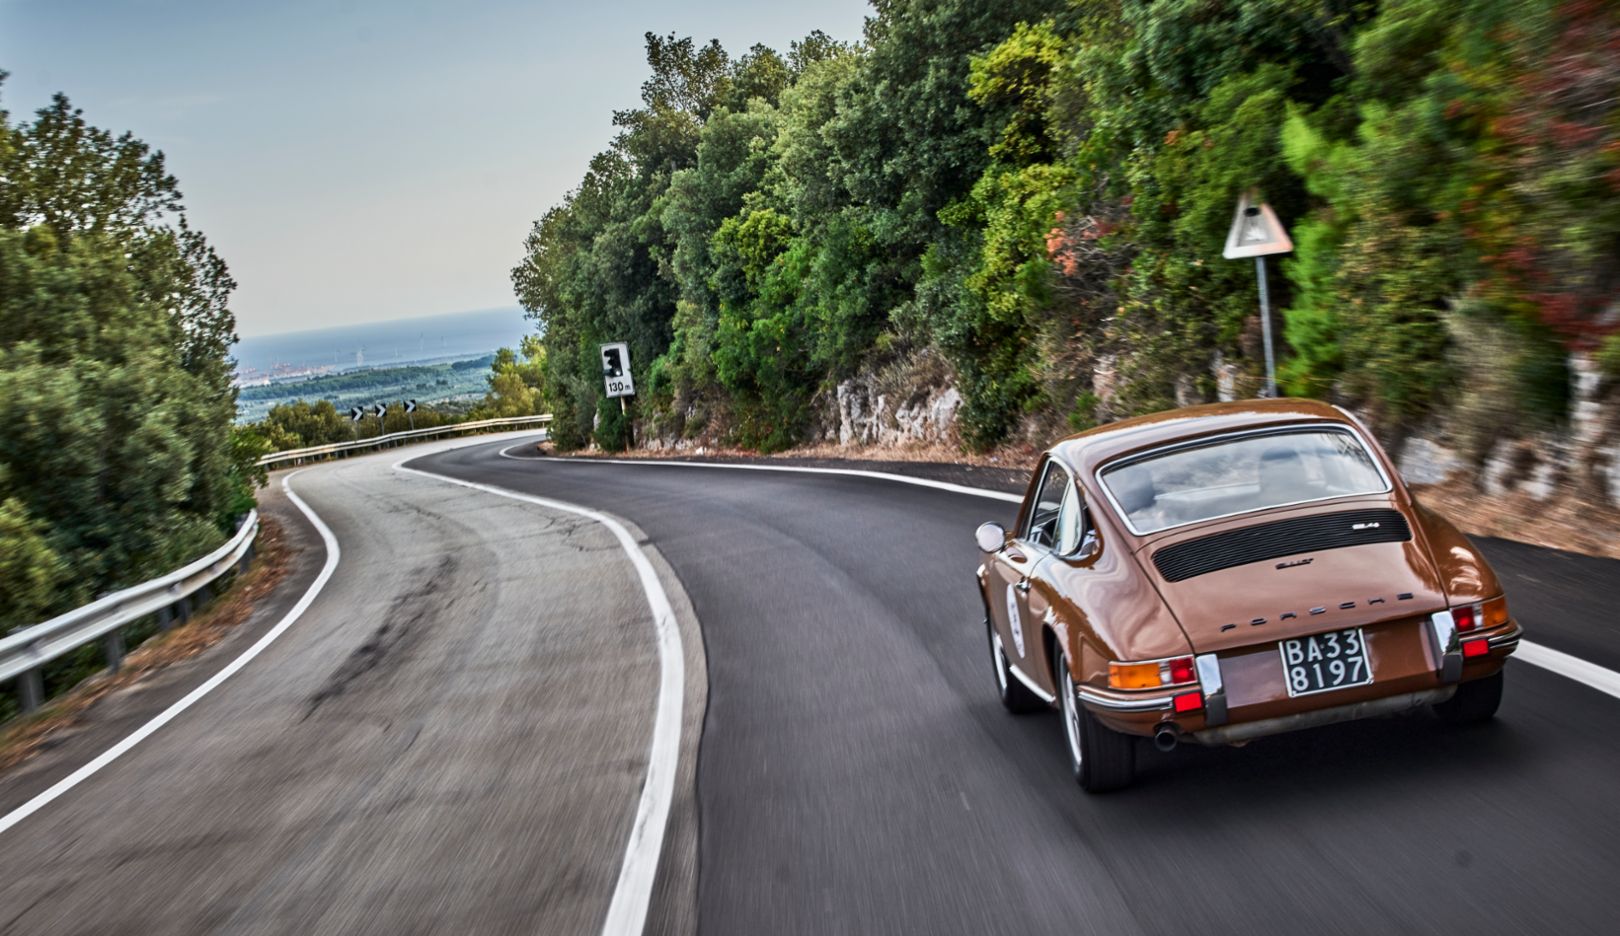 Elegancia en marrón sepia: el 911 TE del año 1972, en la ruta hacia el mar.